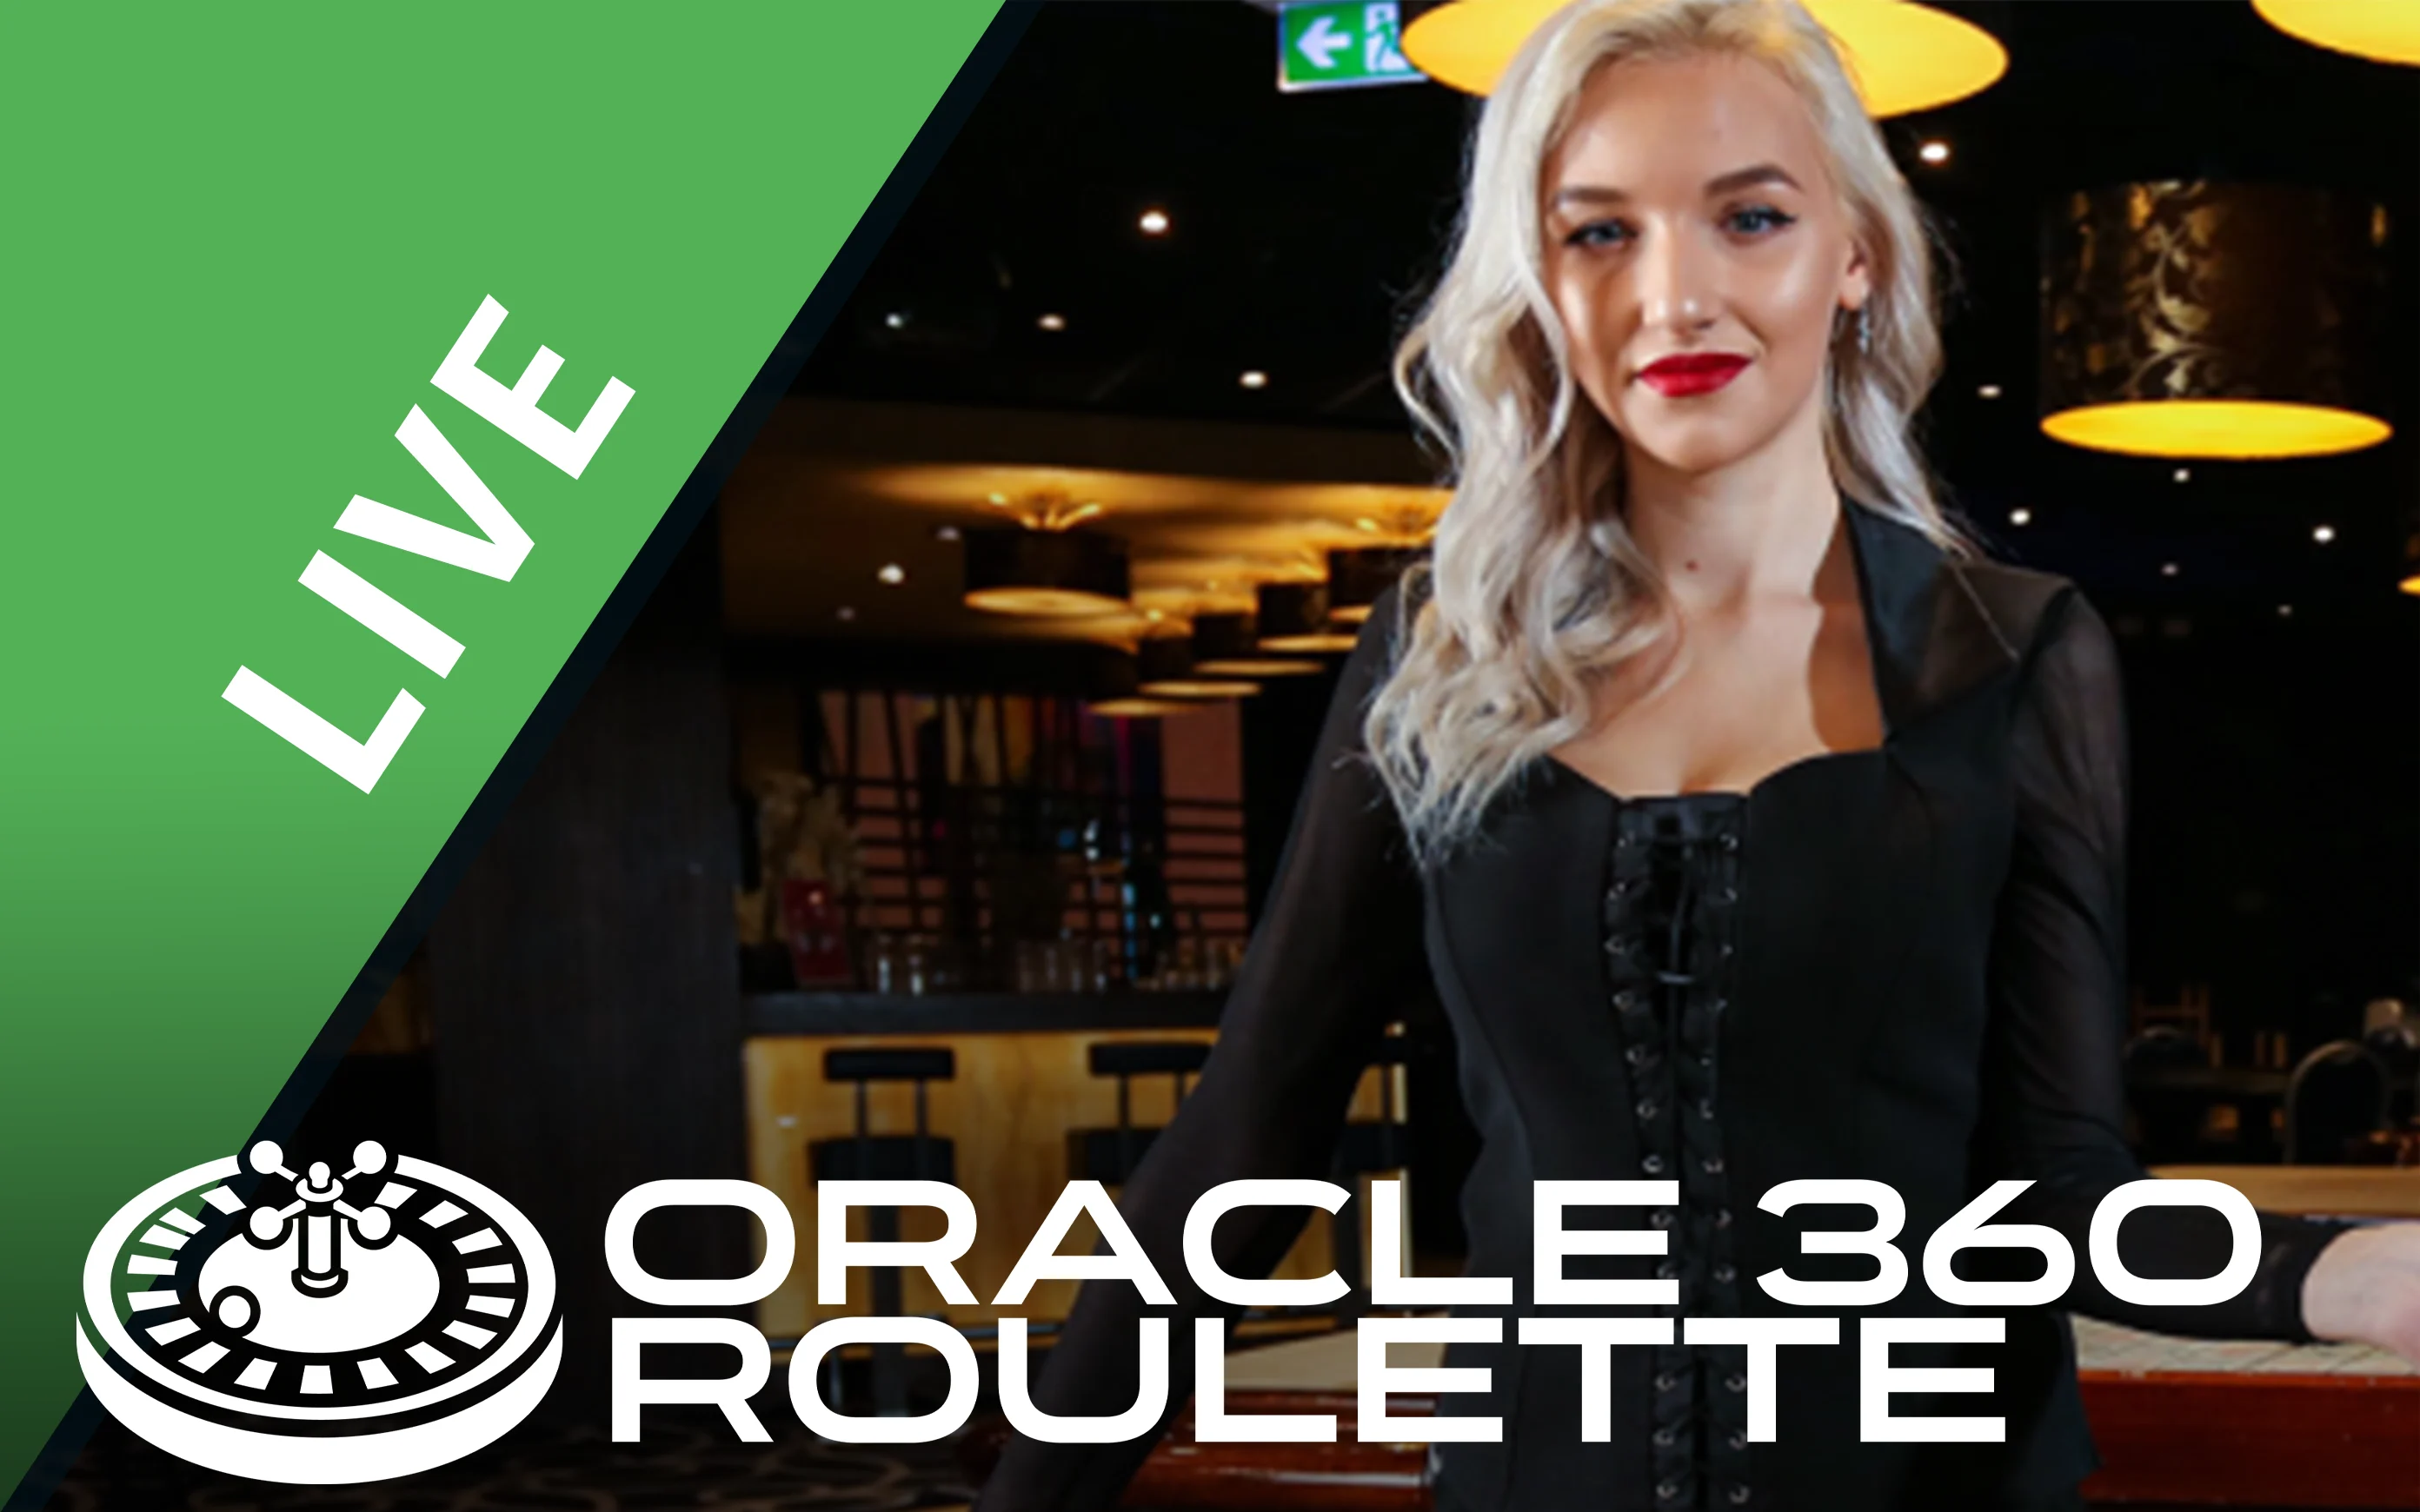 Gioca a Oracle 360 Roulette sul casino online Starcasino.be